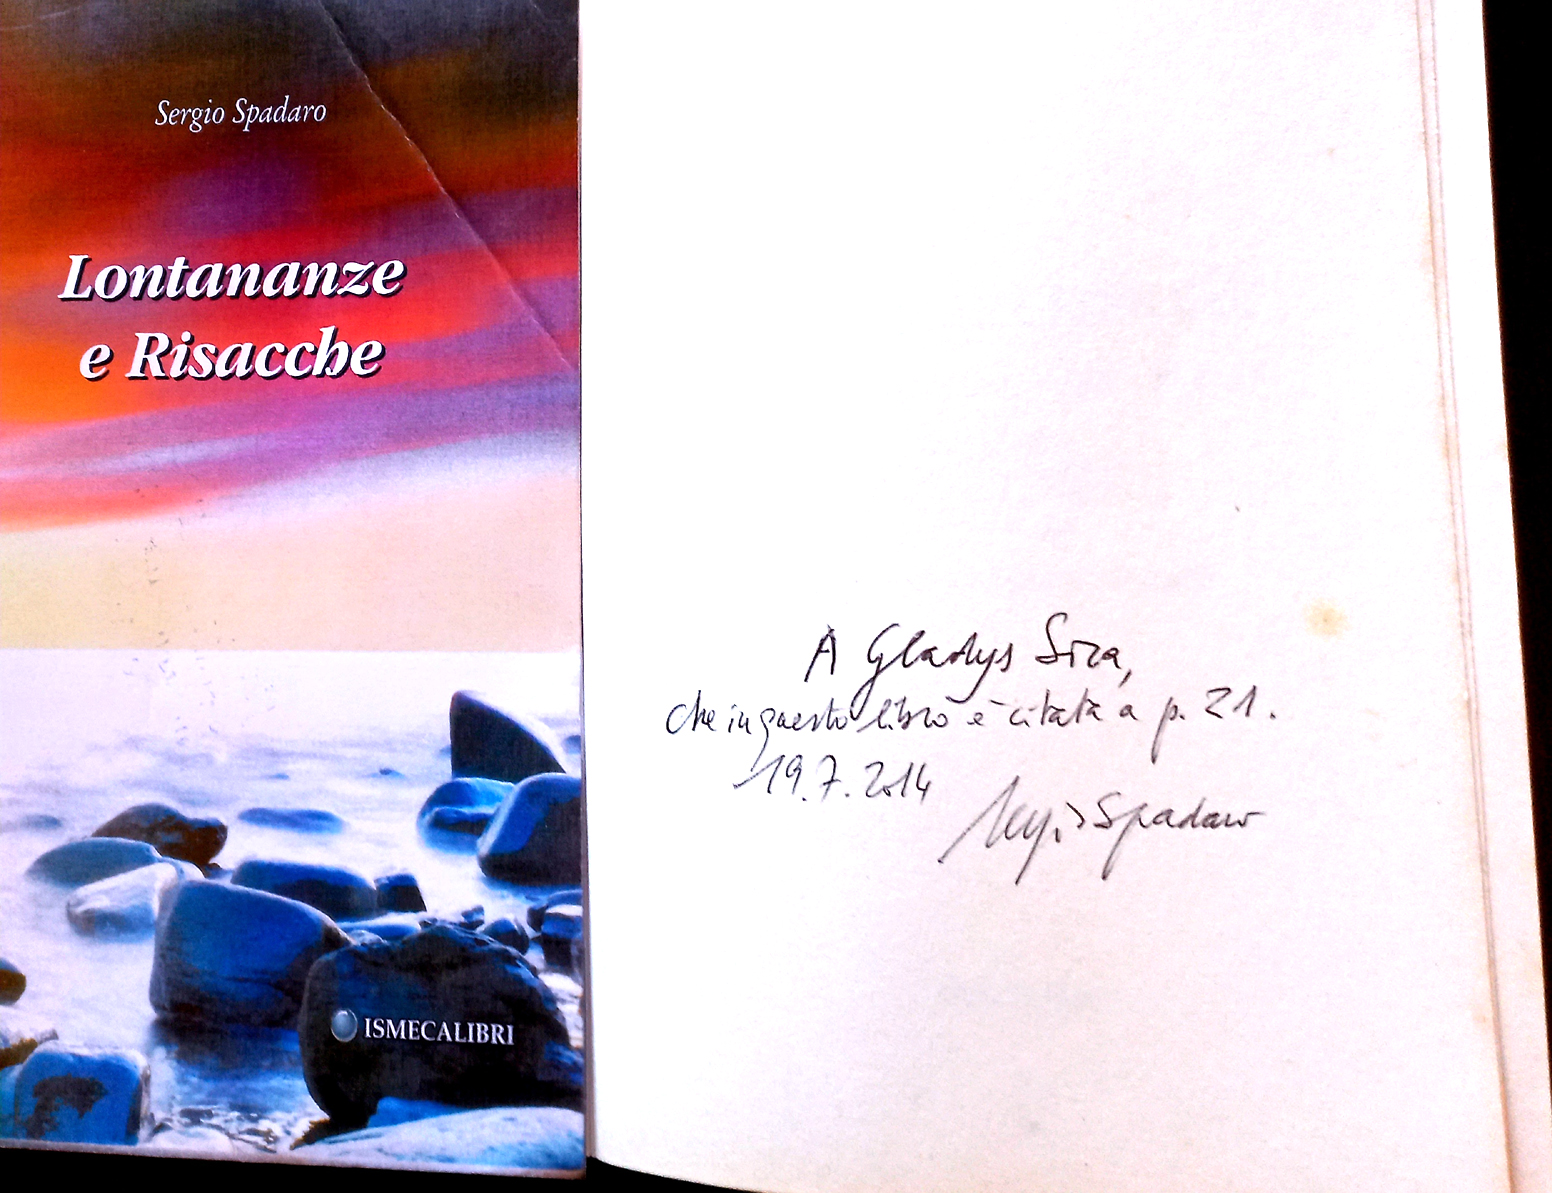 2014 - Recensione del libro inedito 'Vento Atlantico' di Gladys Sica, in 'Lontananze e Risacche' di Sergio Spadaro, a pagina 21.